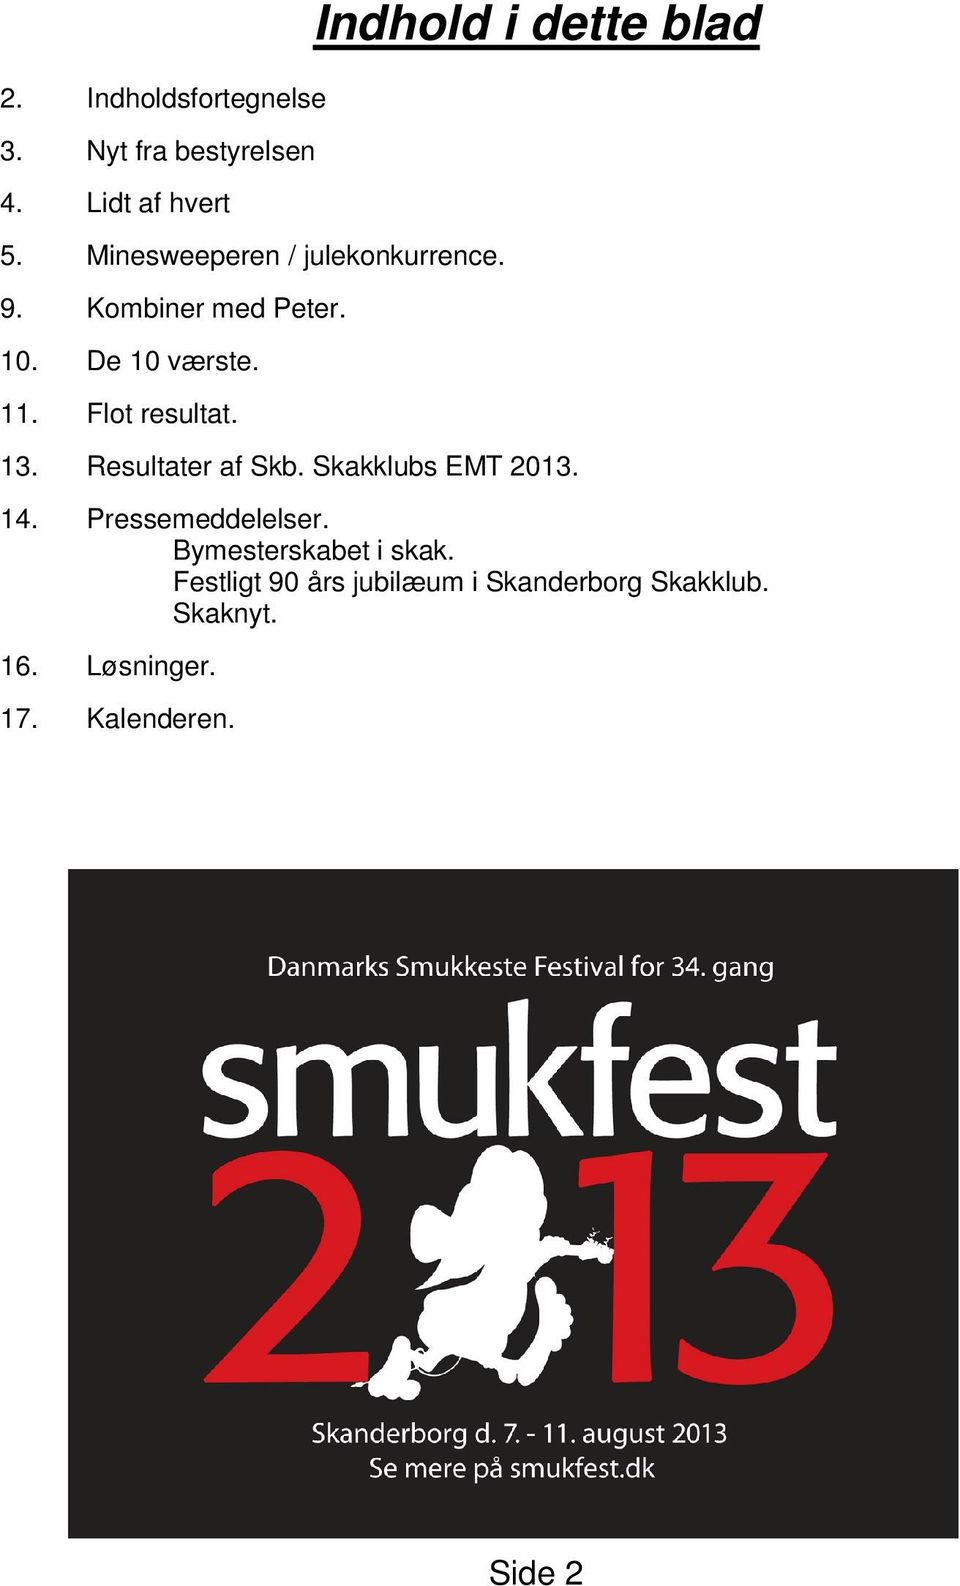 Flot resultat. Indhold i dette blad 13. Resultater af Skb. Skakklubs EMT 2013. 14.